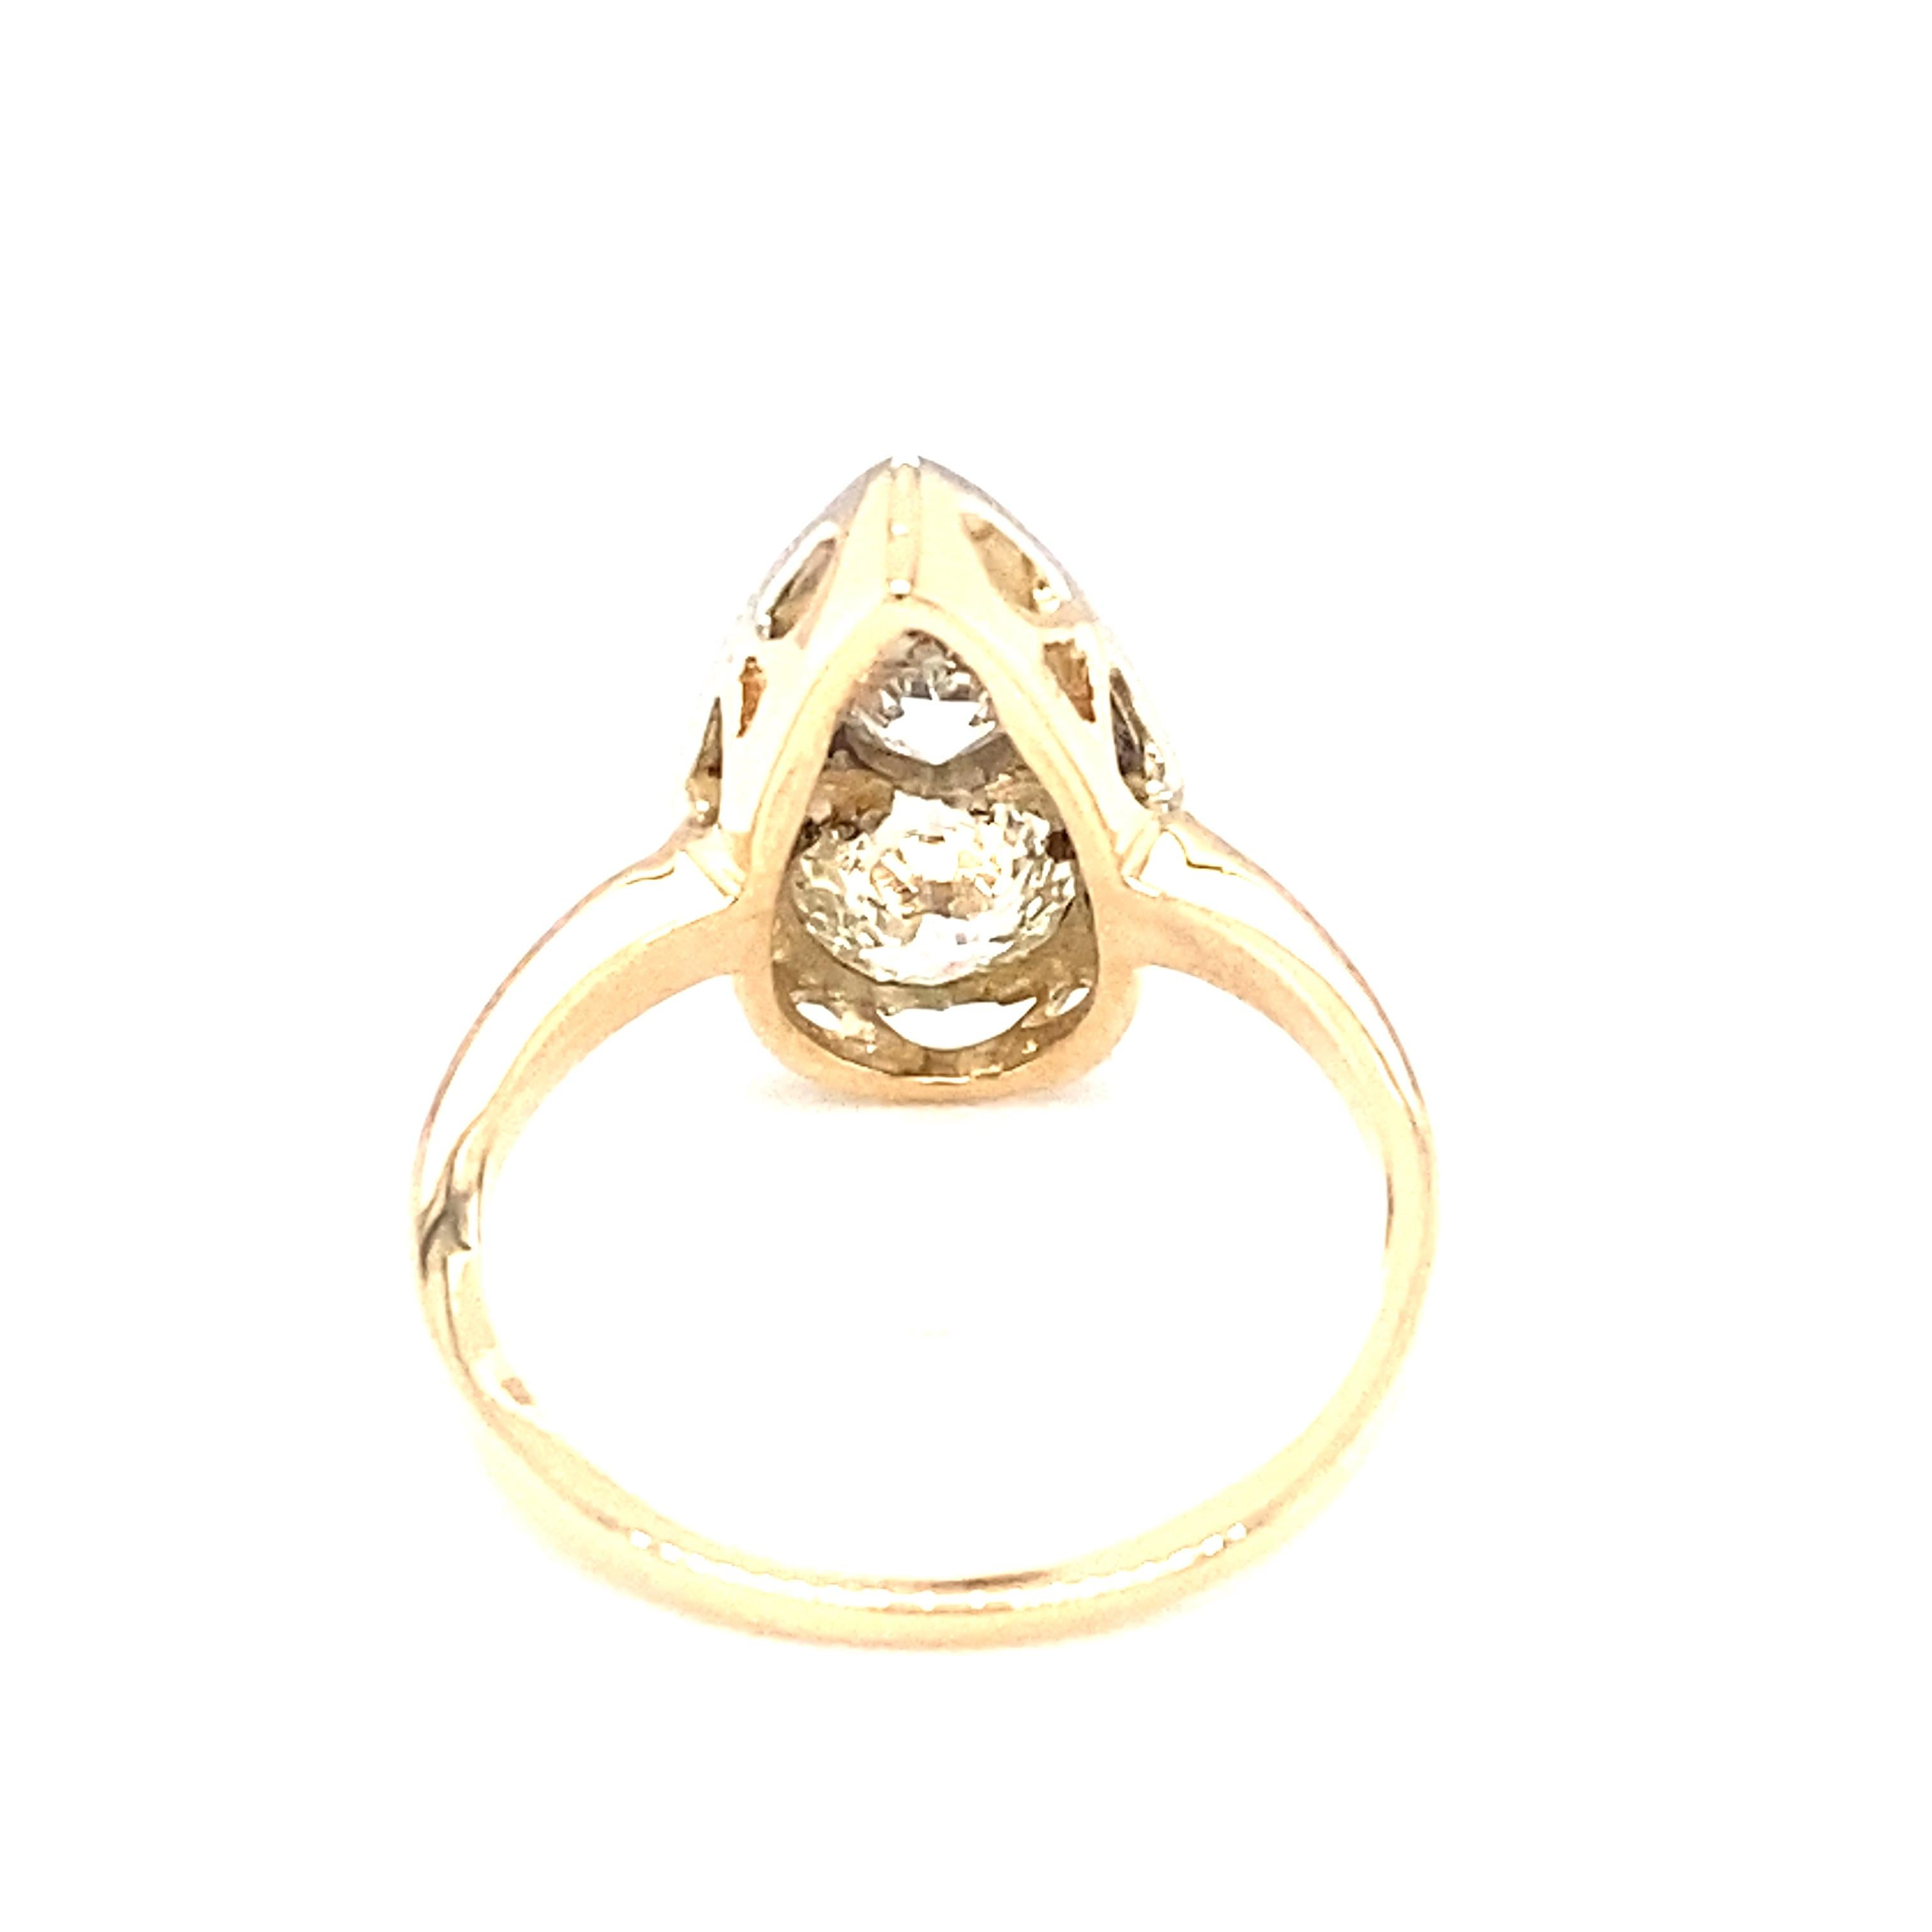 Circa 1920s Art Deco 1.30 Carat Total Diamond Ring in 14 Karat Gold 2